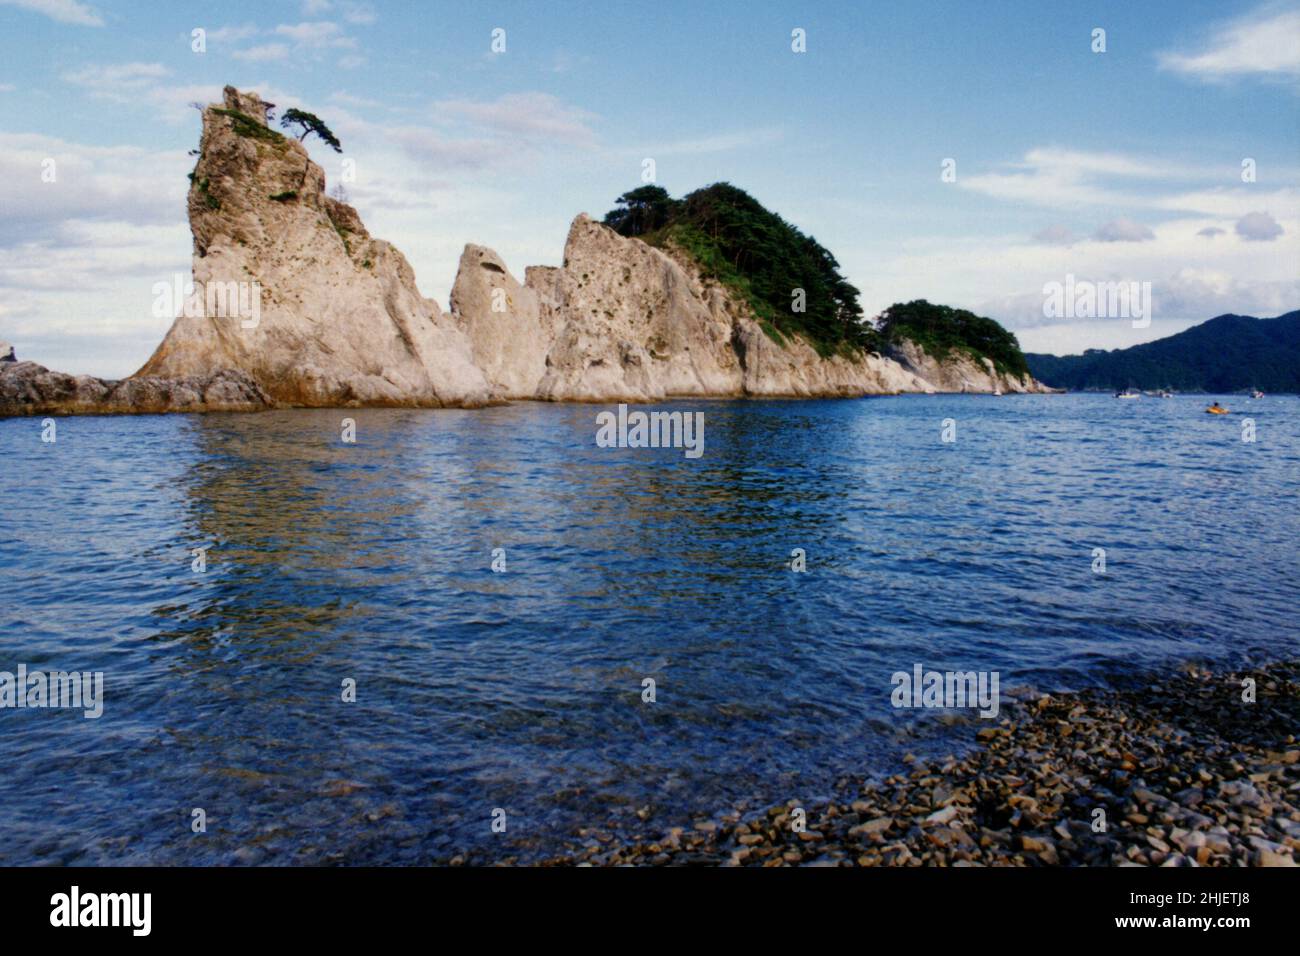 Scanned Copy of Archival Photo Japan Landscape Stock Photo